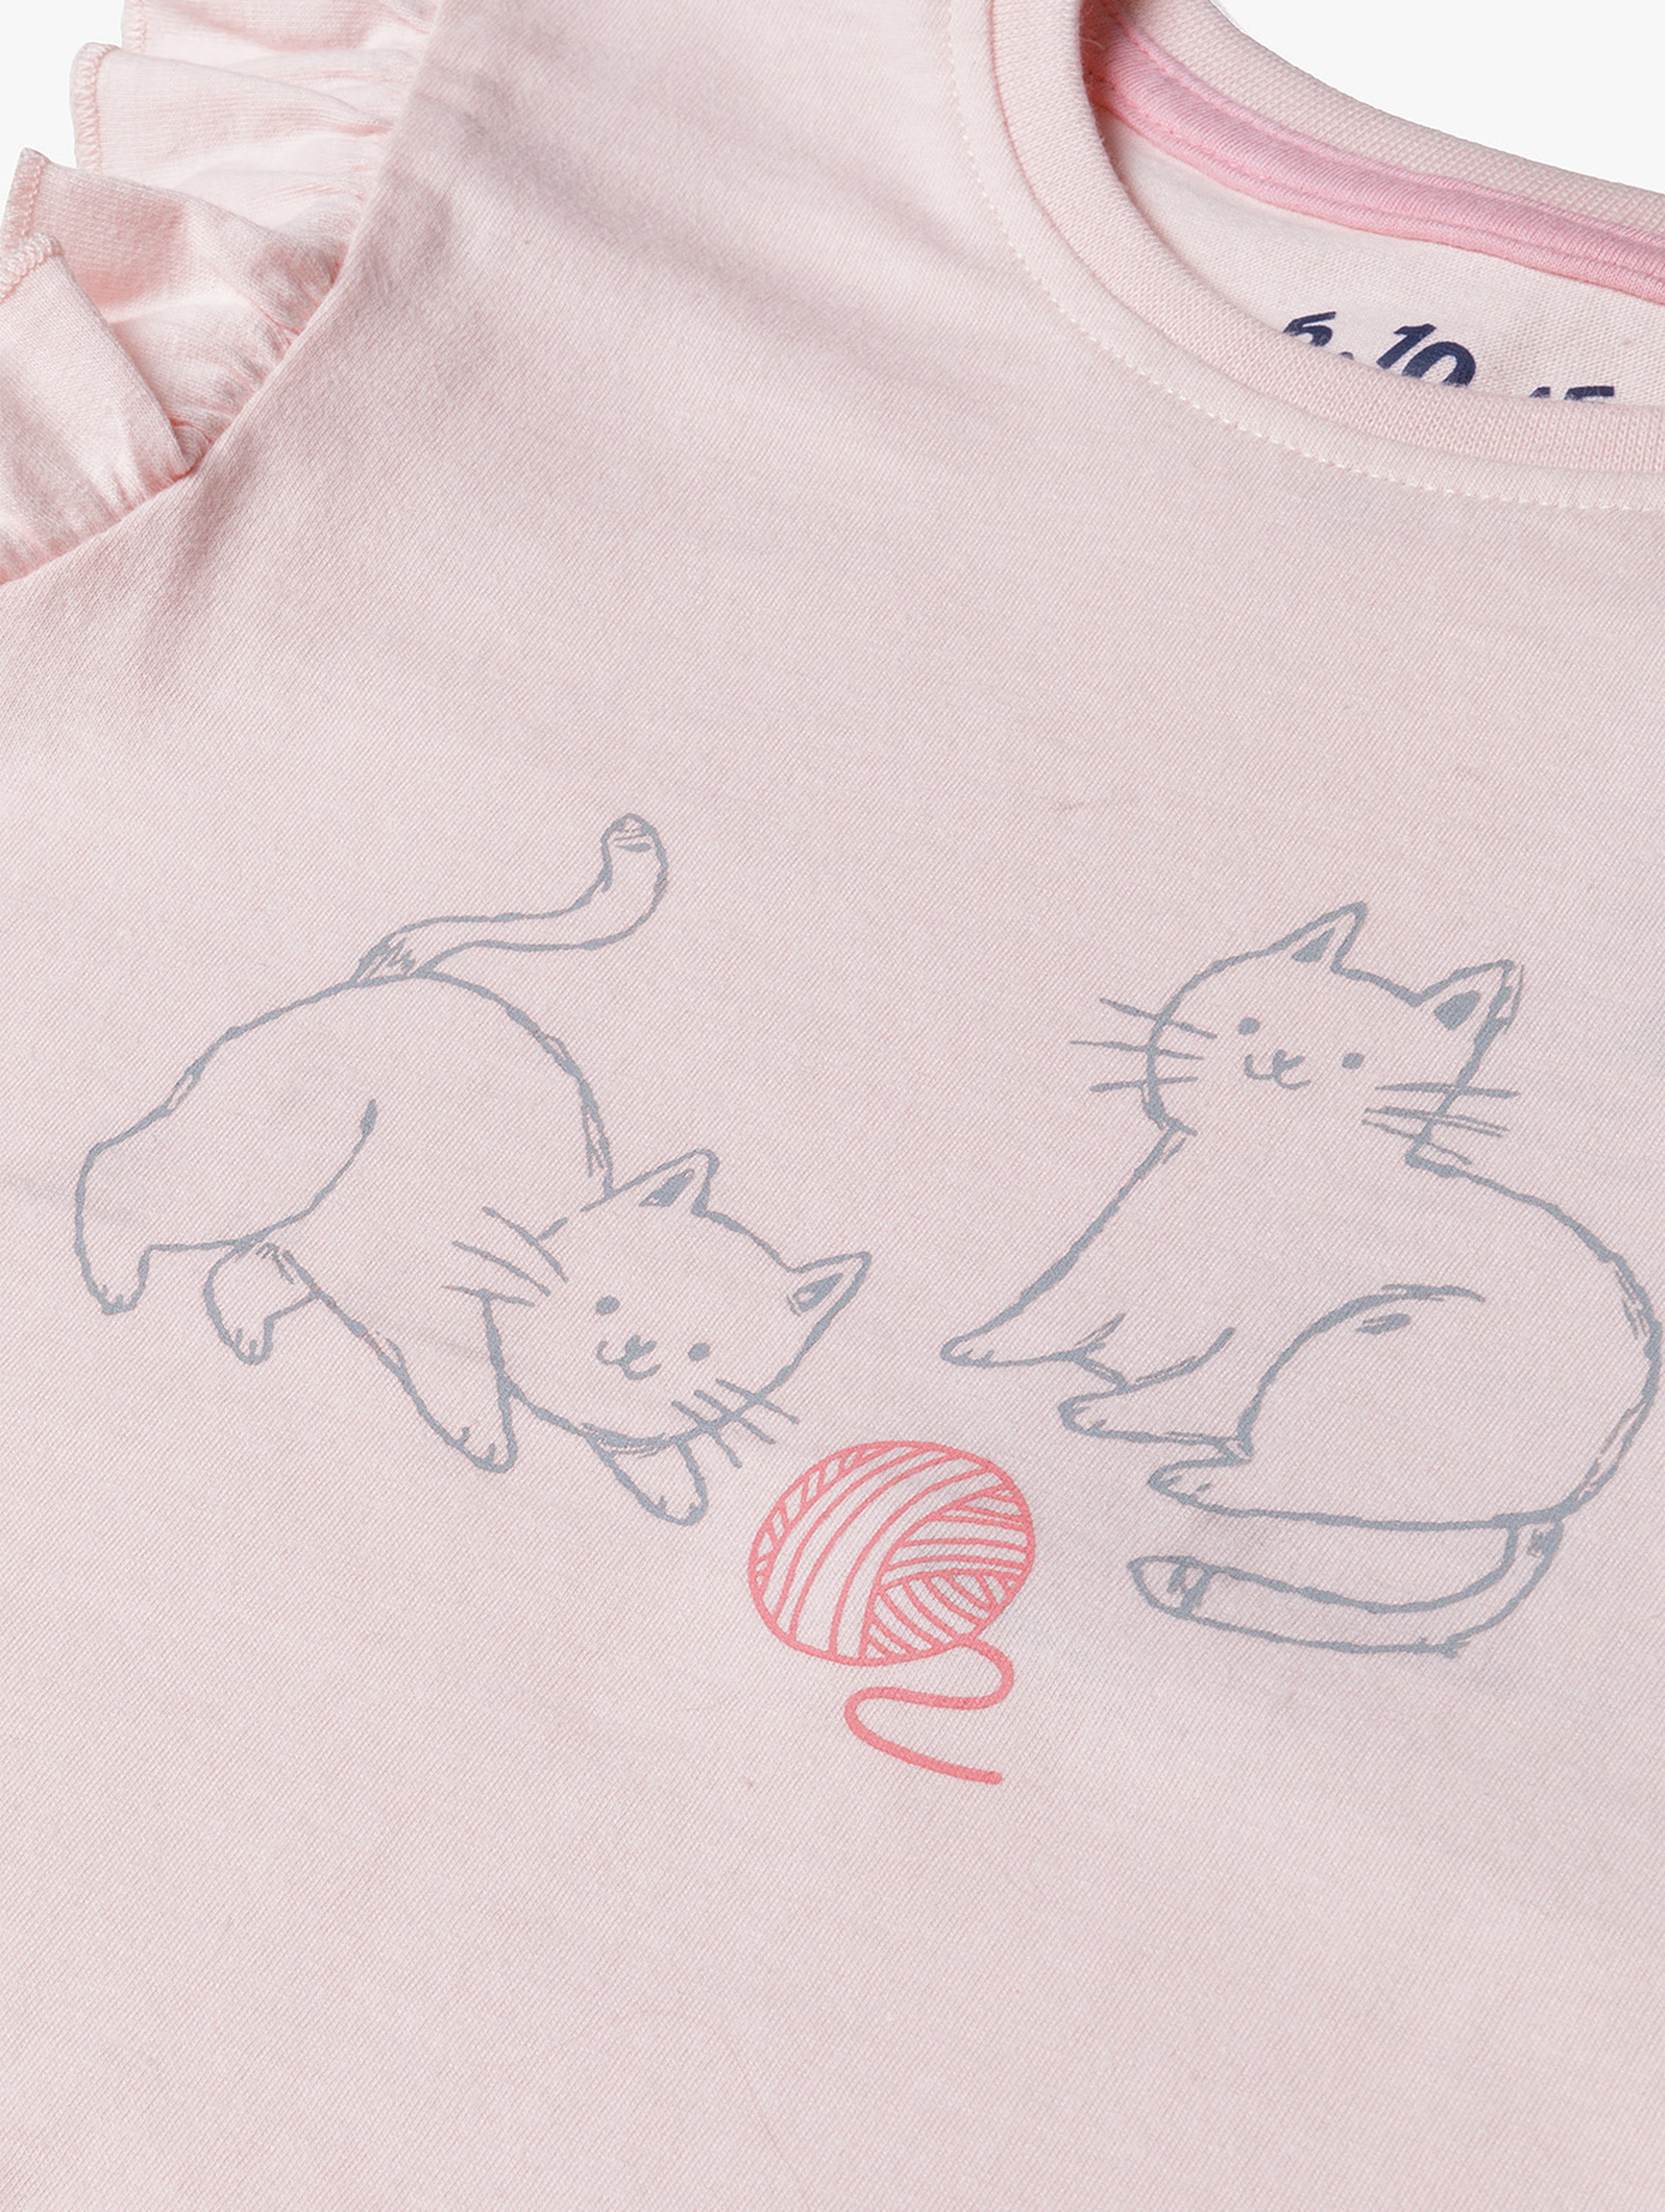 Pidżama dla dziewczynki w kotki